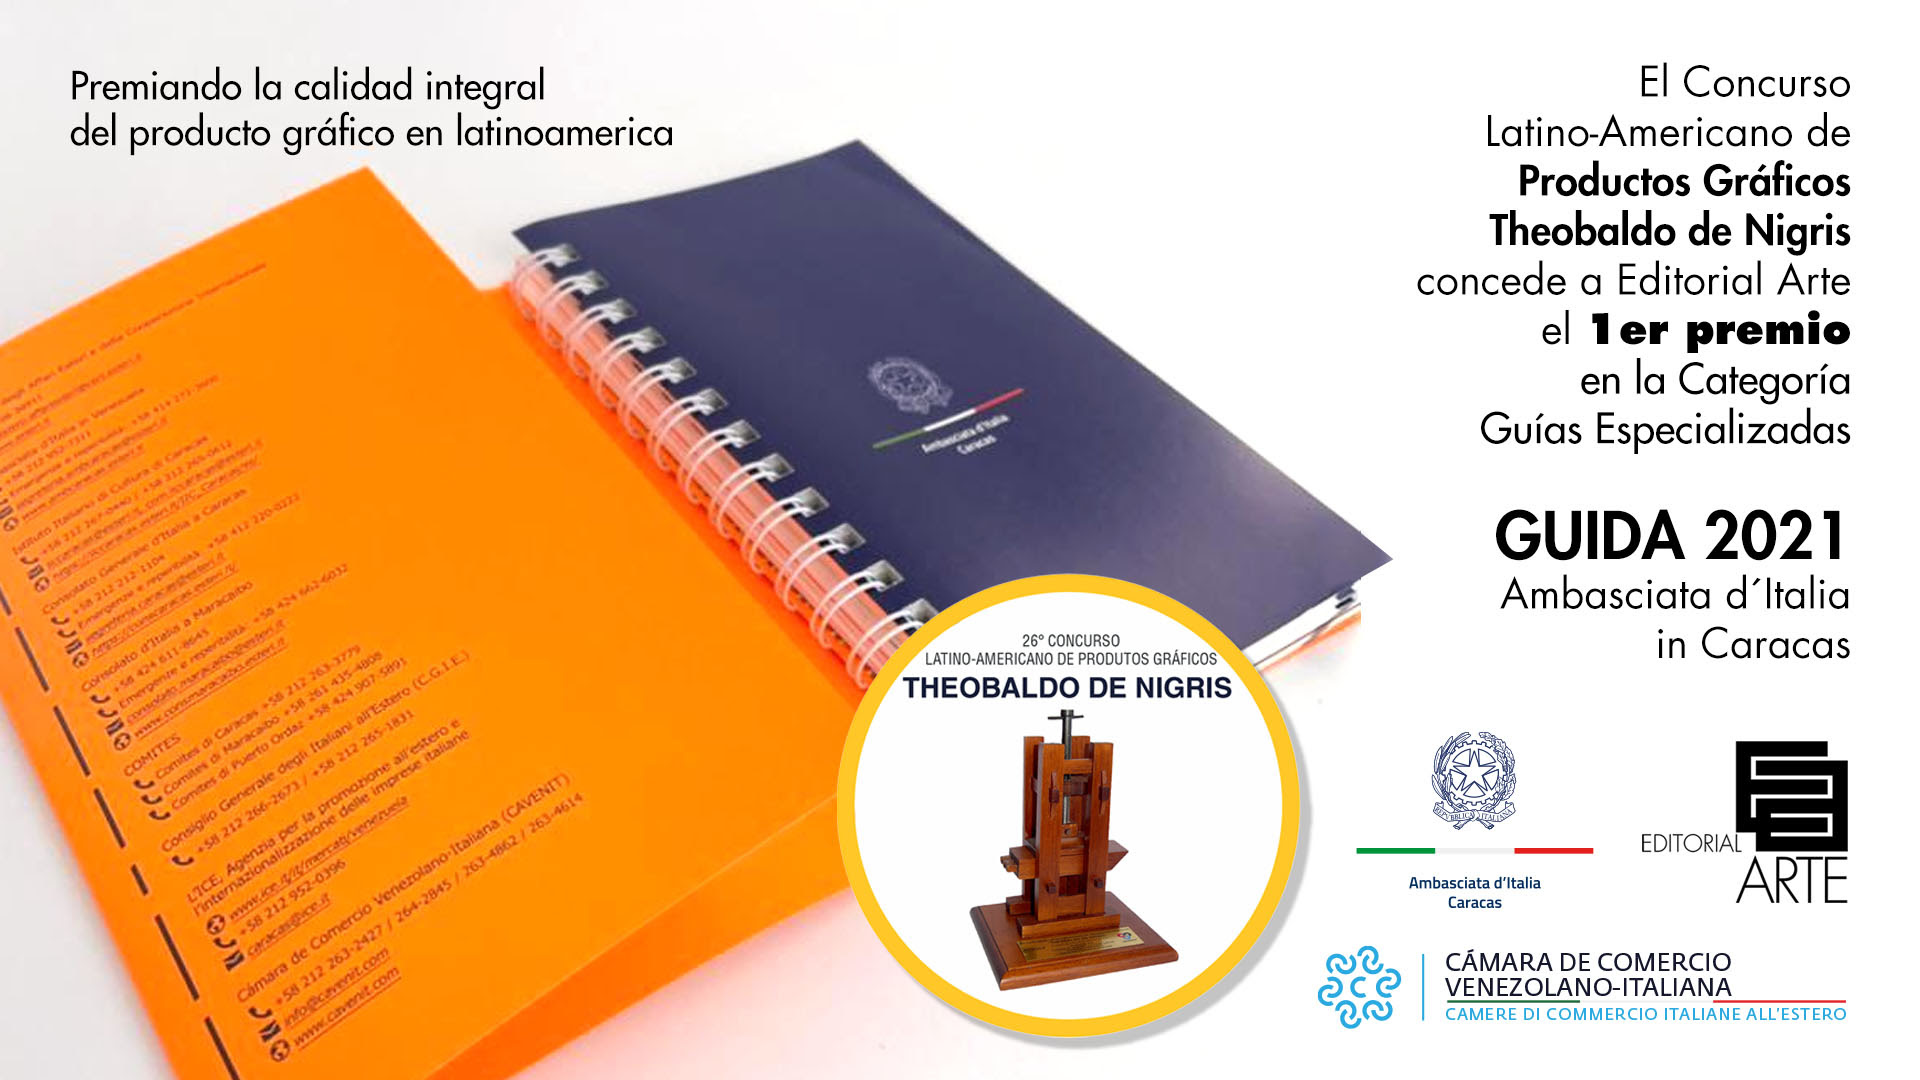 La Guía 2021 Ambasciata d´Italia Caracas ganó premio a la excelencia en el Concurso Latinoamericano de Productos Gráficos